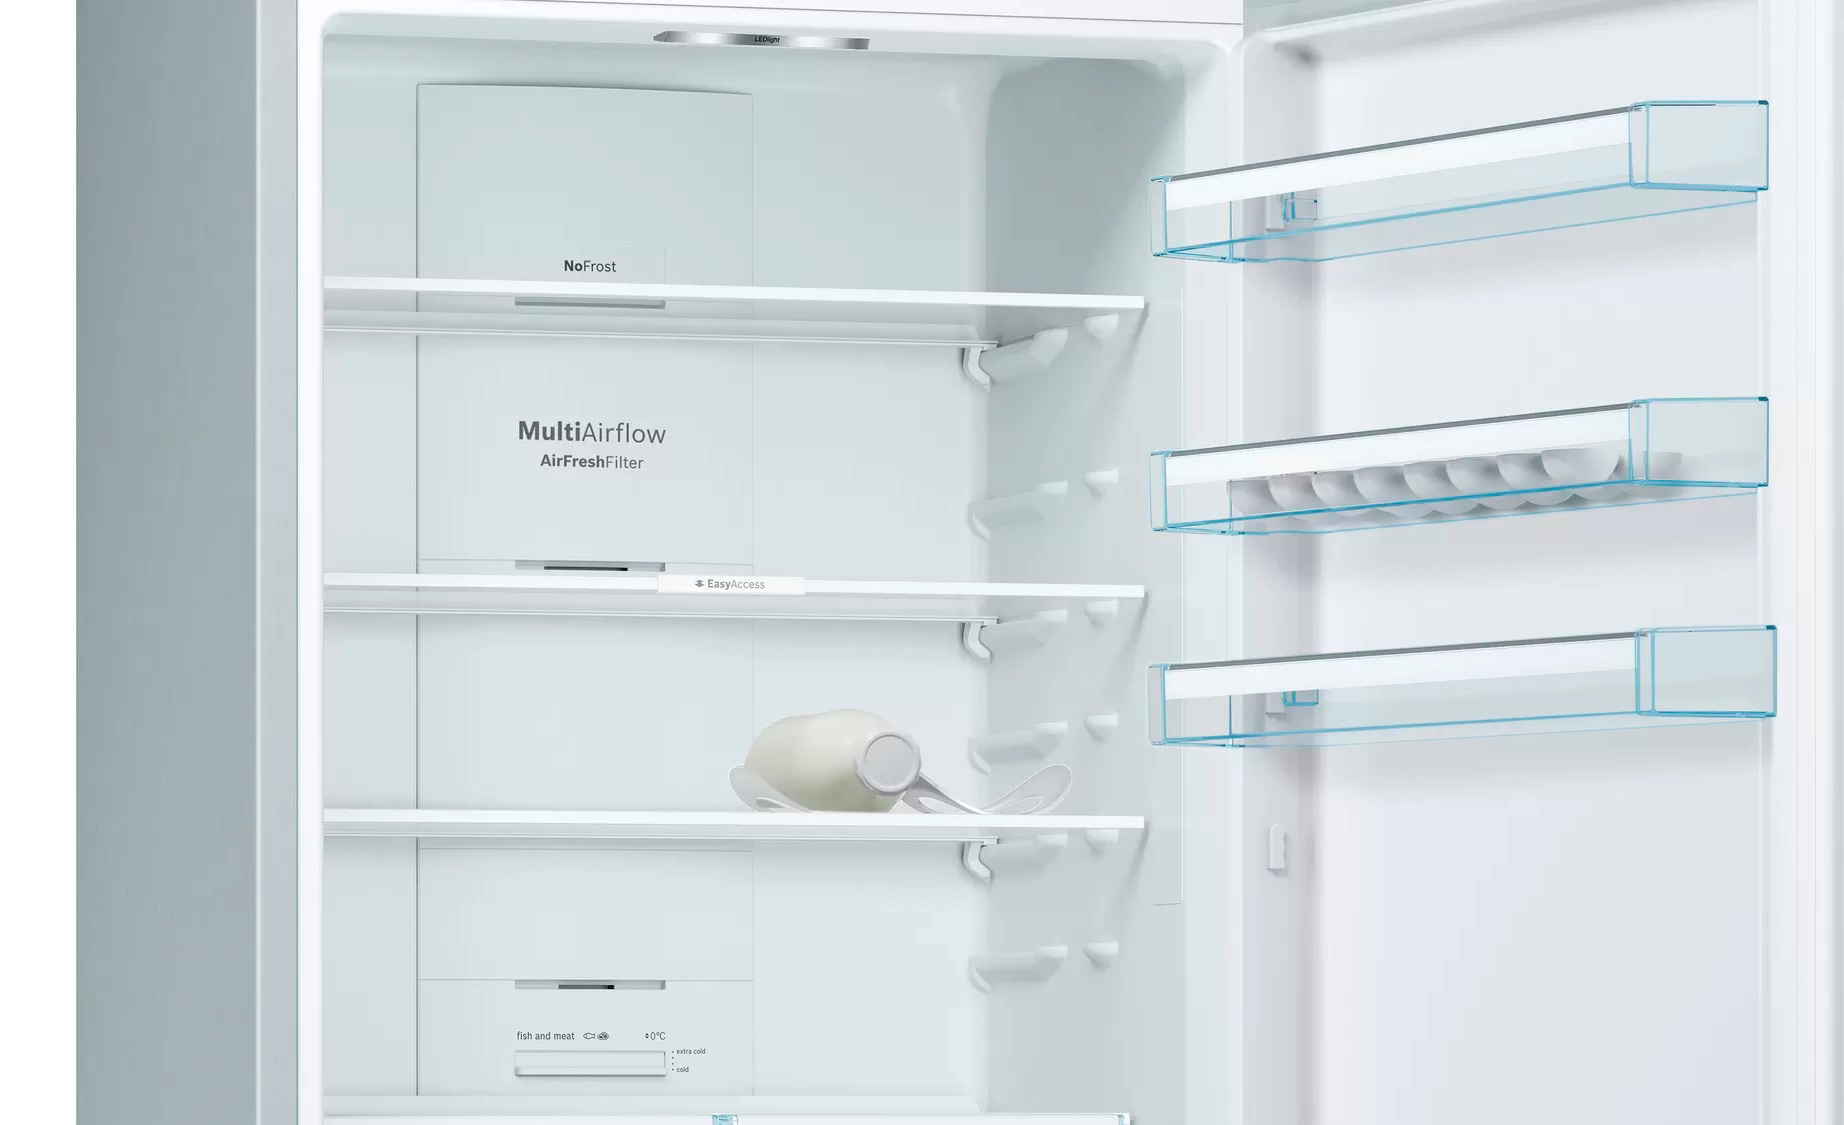 Холодильник Bosch KGN49XL30U, нержавеющая сталь